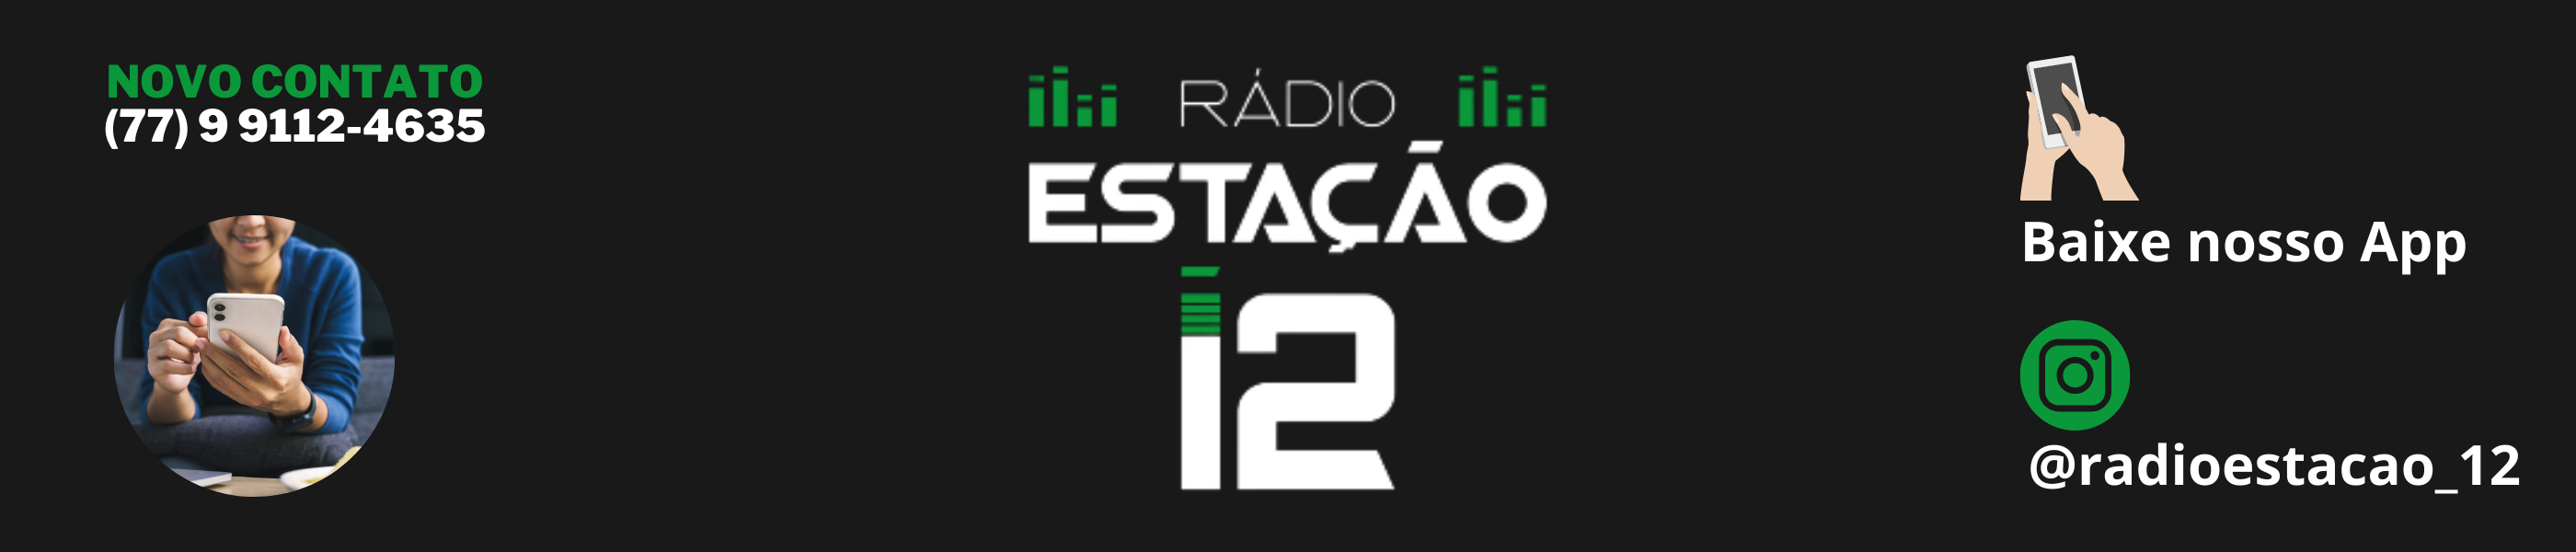 Rádio Estação 12